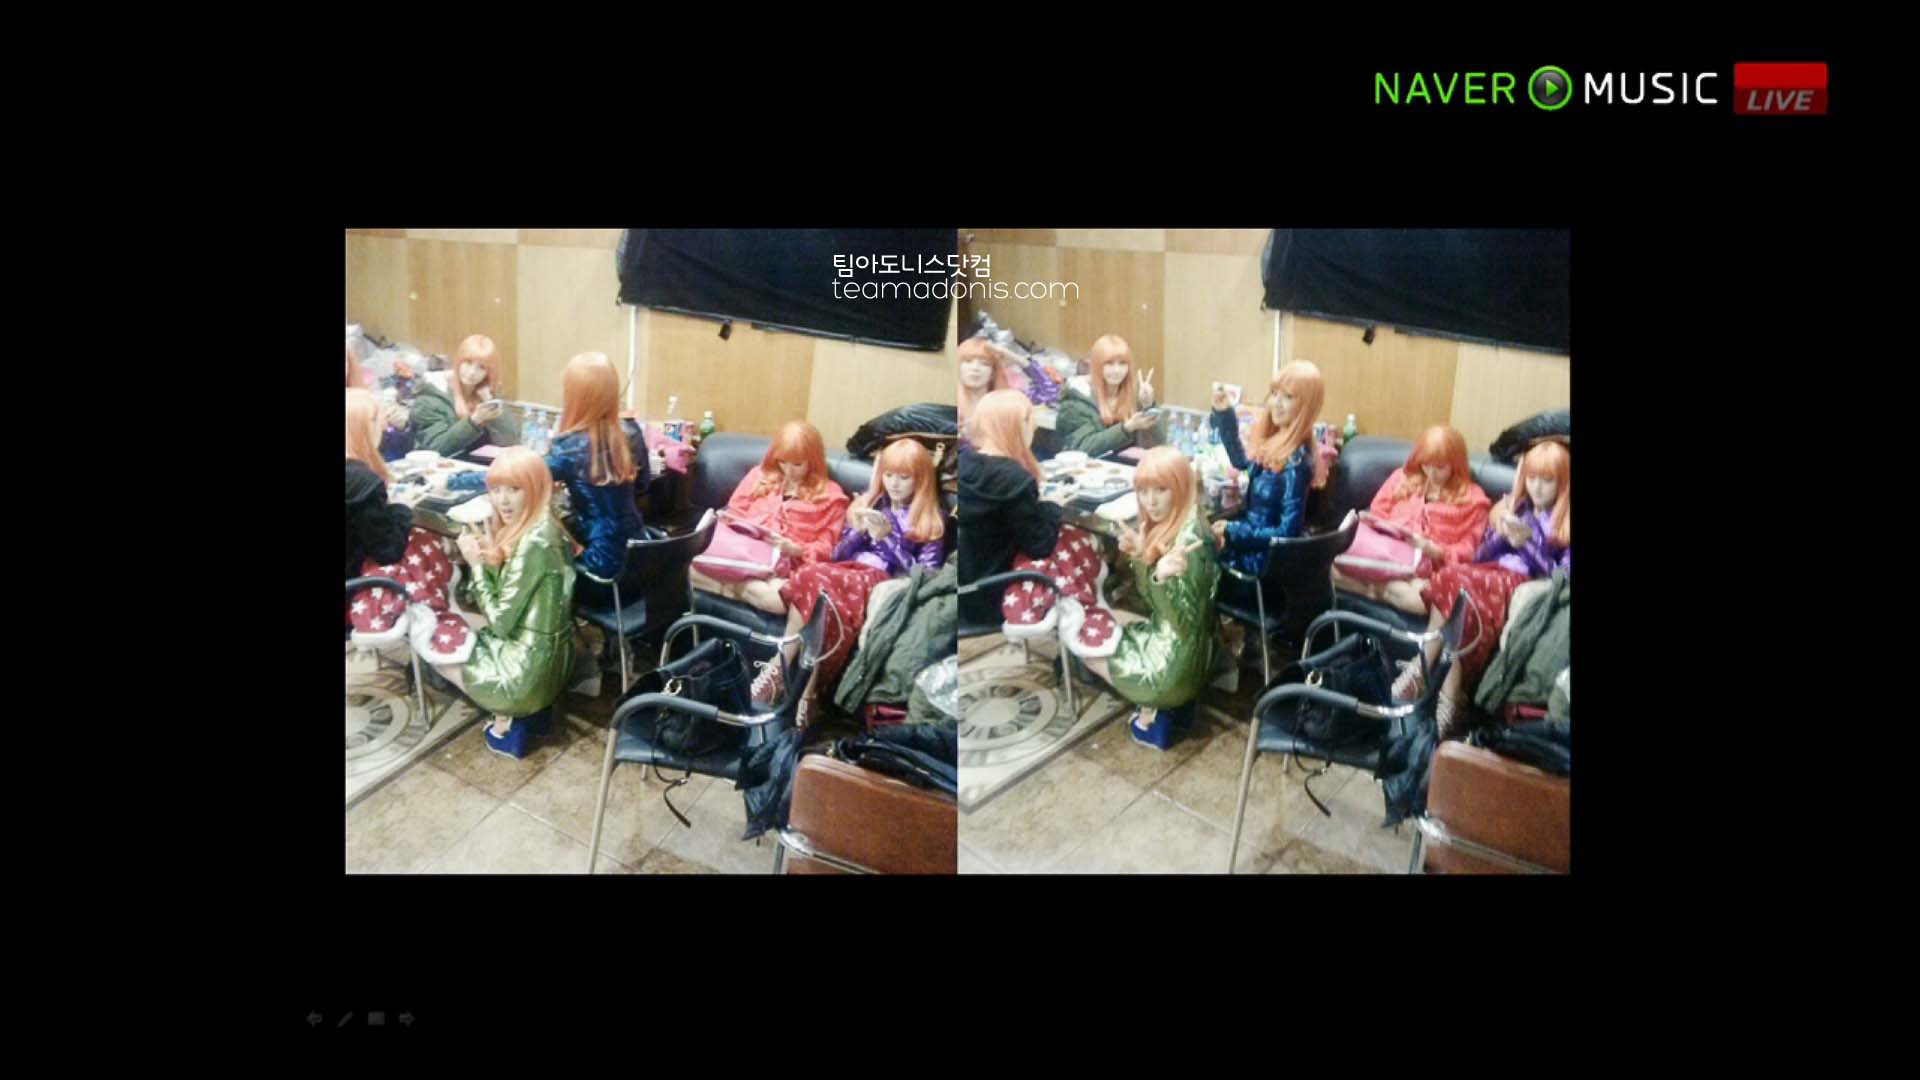 Naver V Concert screencaps